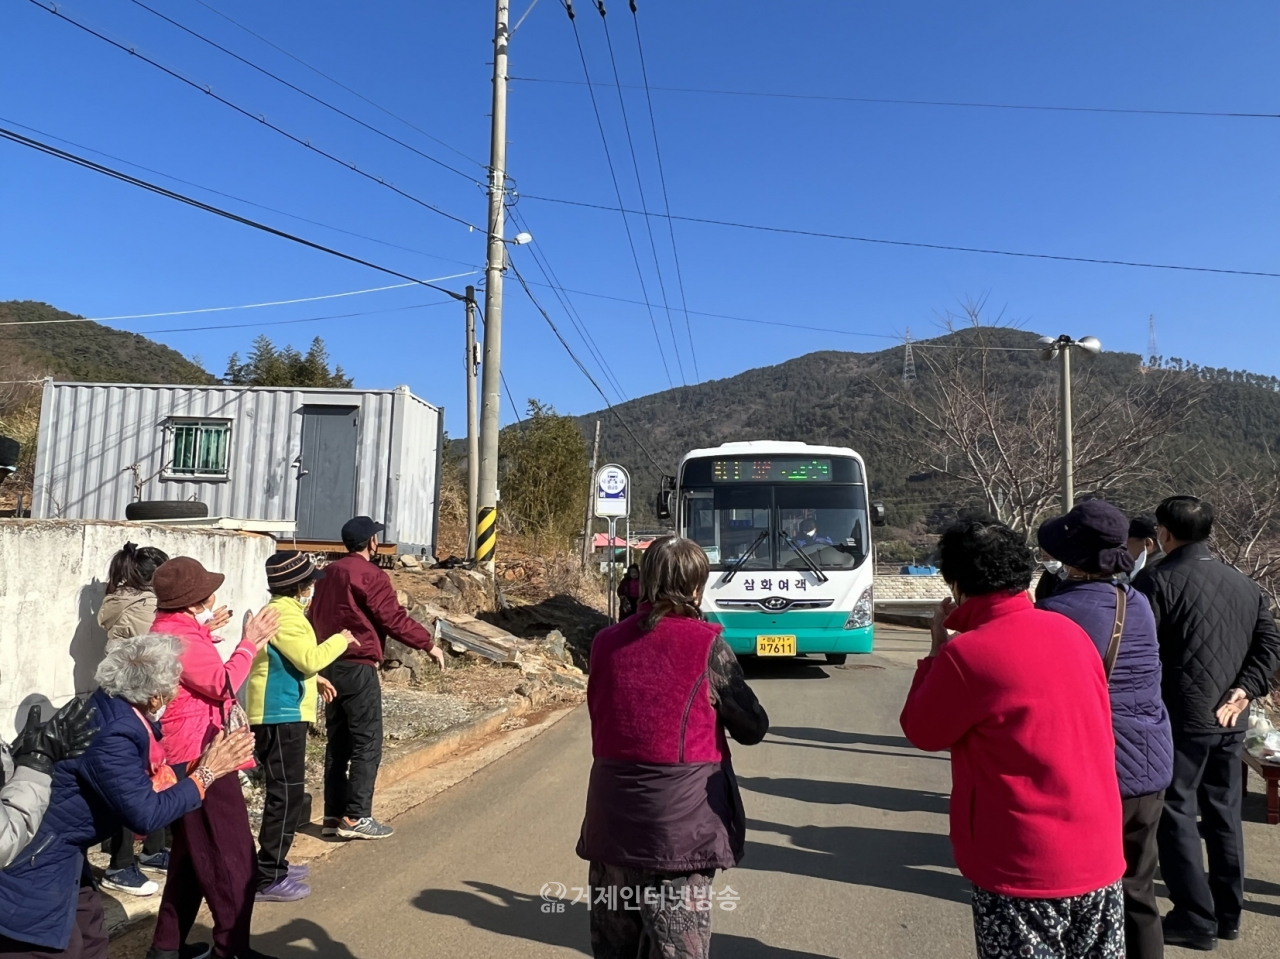 17년 만에 신설된 시내버스 노선의 첫 운행을 마을주민들이 반기고 있다.